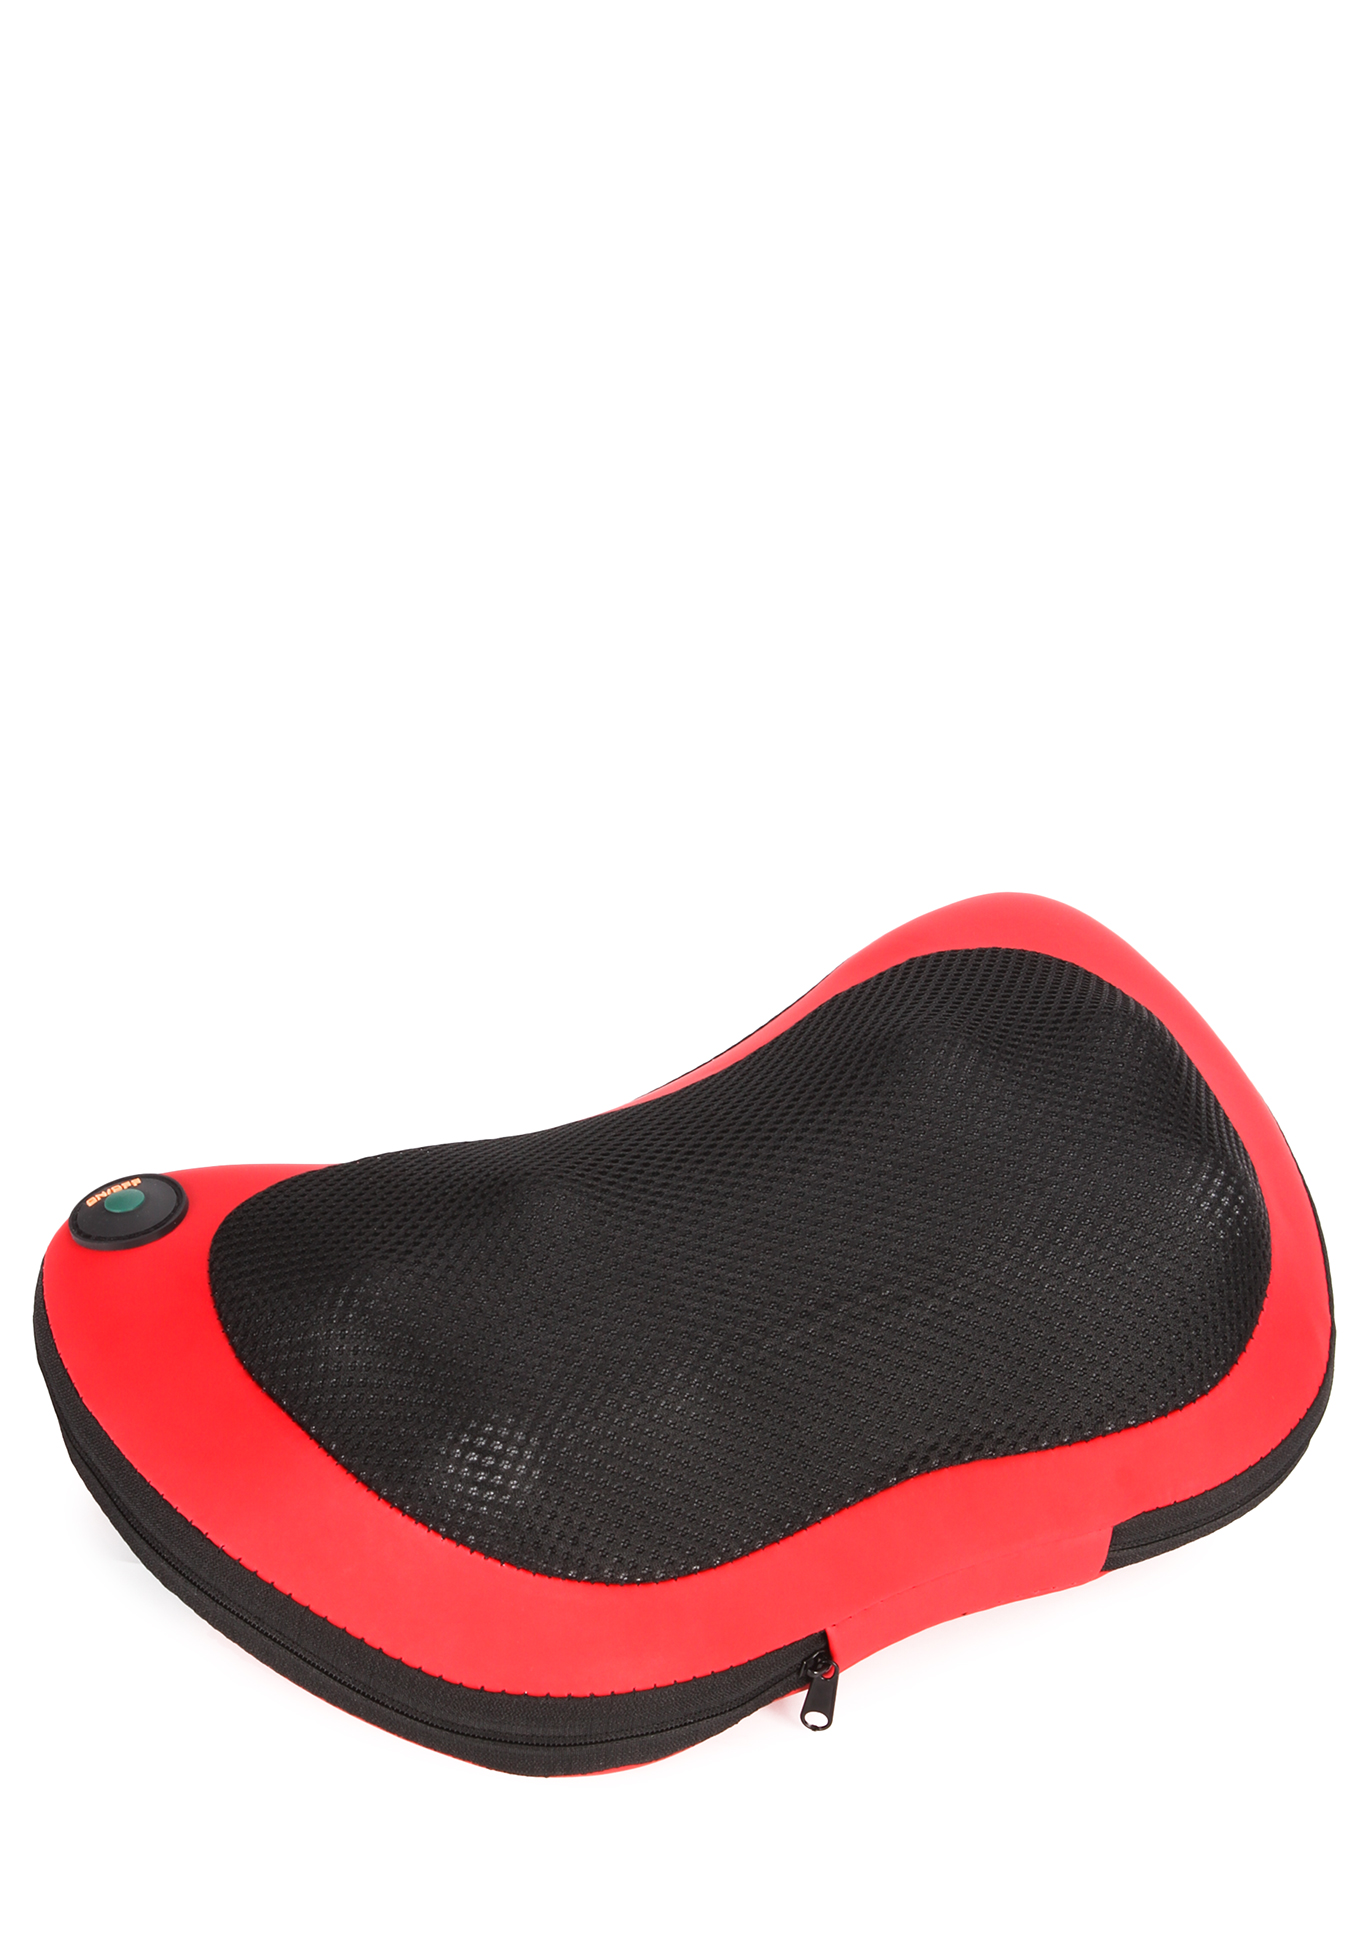 Универсальная массажная подушка "Profi" Top-tonus, цвет красный + черный